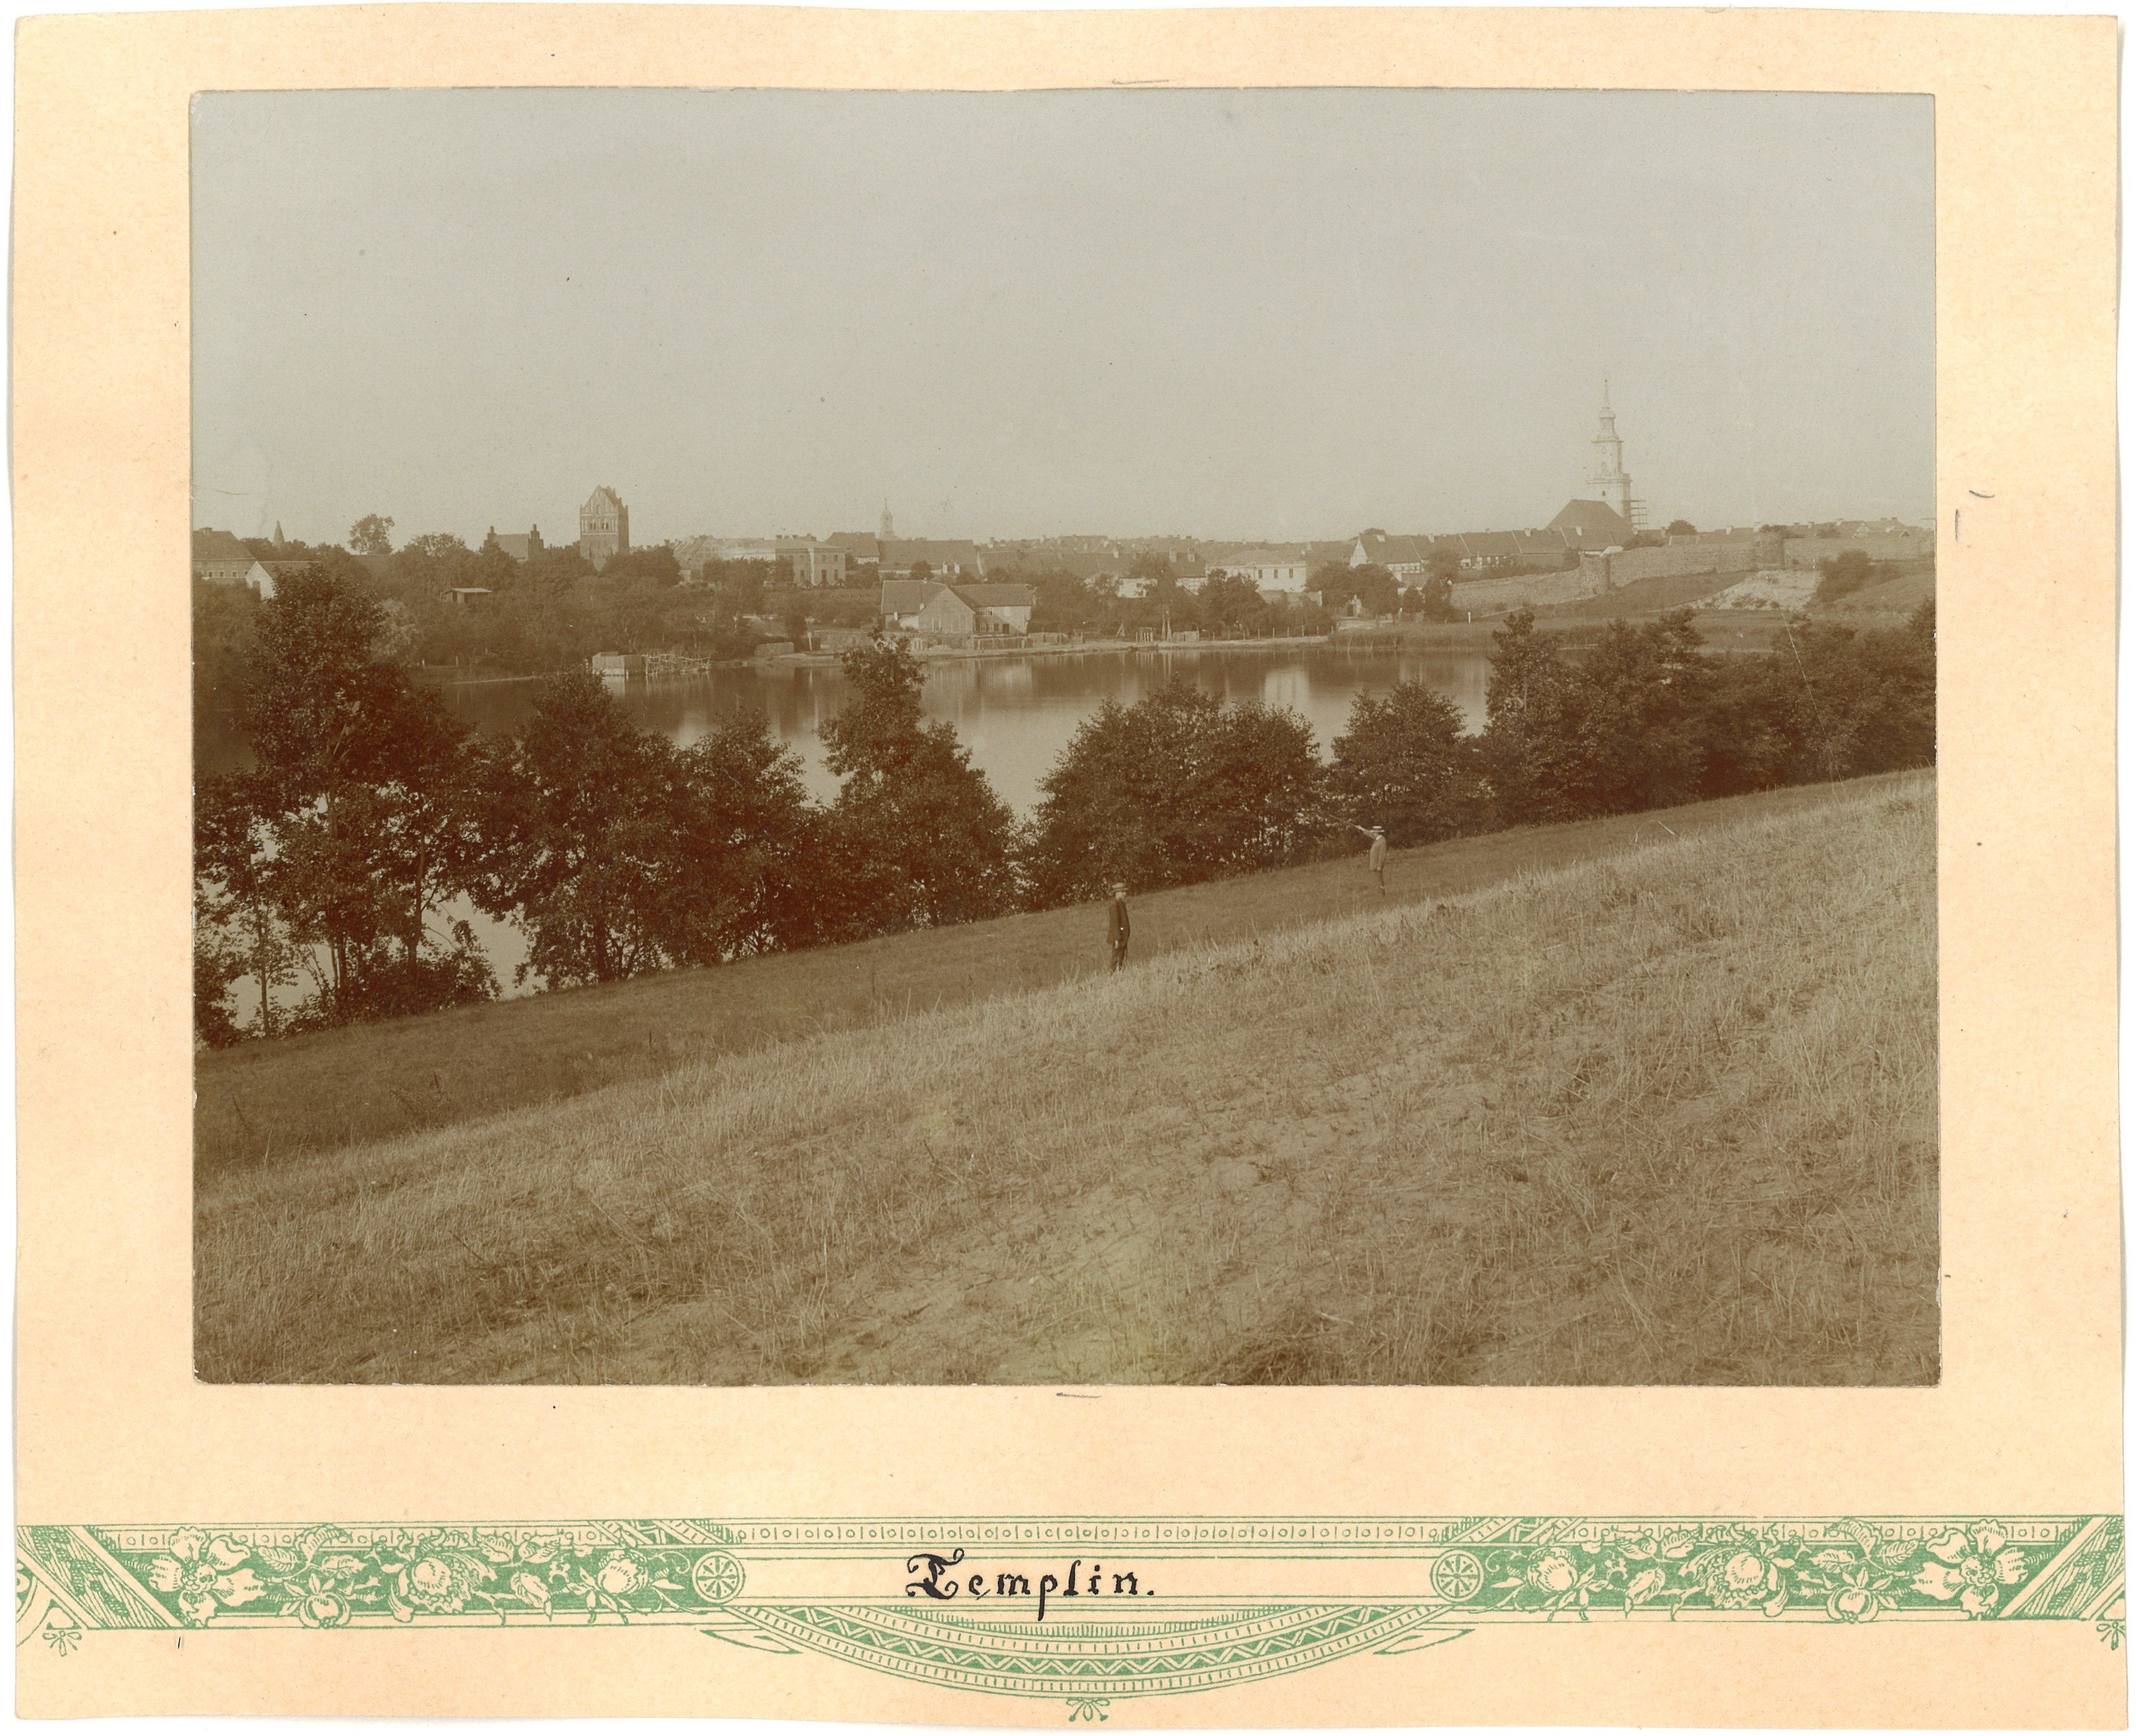 Templin: Stadtansicht von Nordosten über den Templiner Stadtsee (Landesgeschichtliche Vereinigung für die Mark Brandenburg e.V., Archiv CC BY)